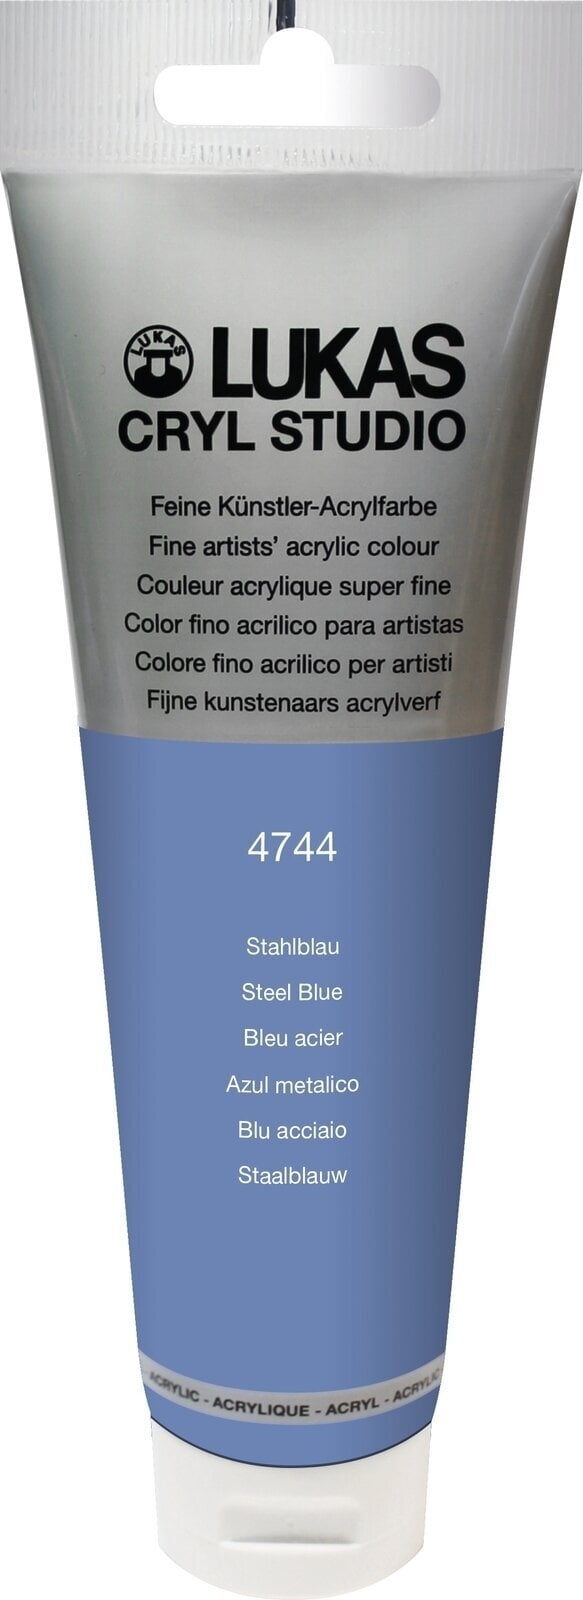 Tinta acrílica Lukas Cryl Studio Acrylic Paint Plastic Tube Tinta acrílica Steel Blue 125 ml 1 un.